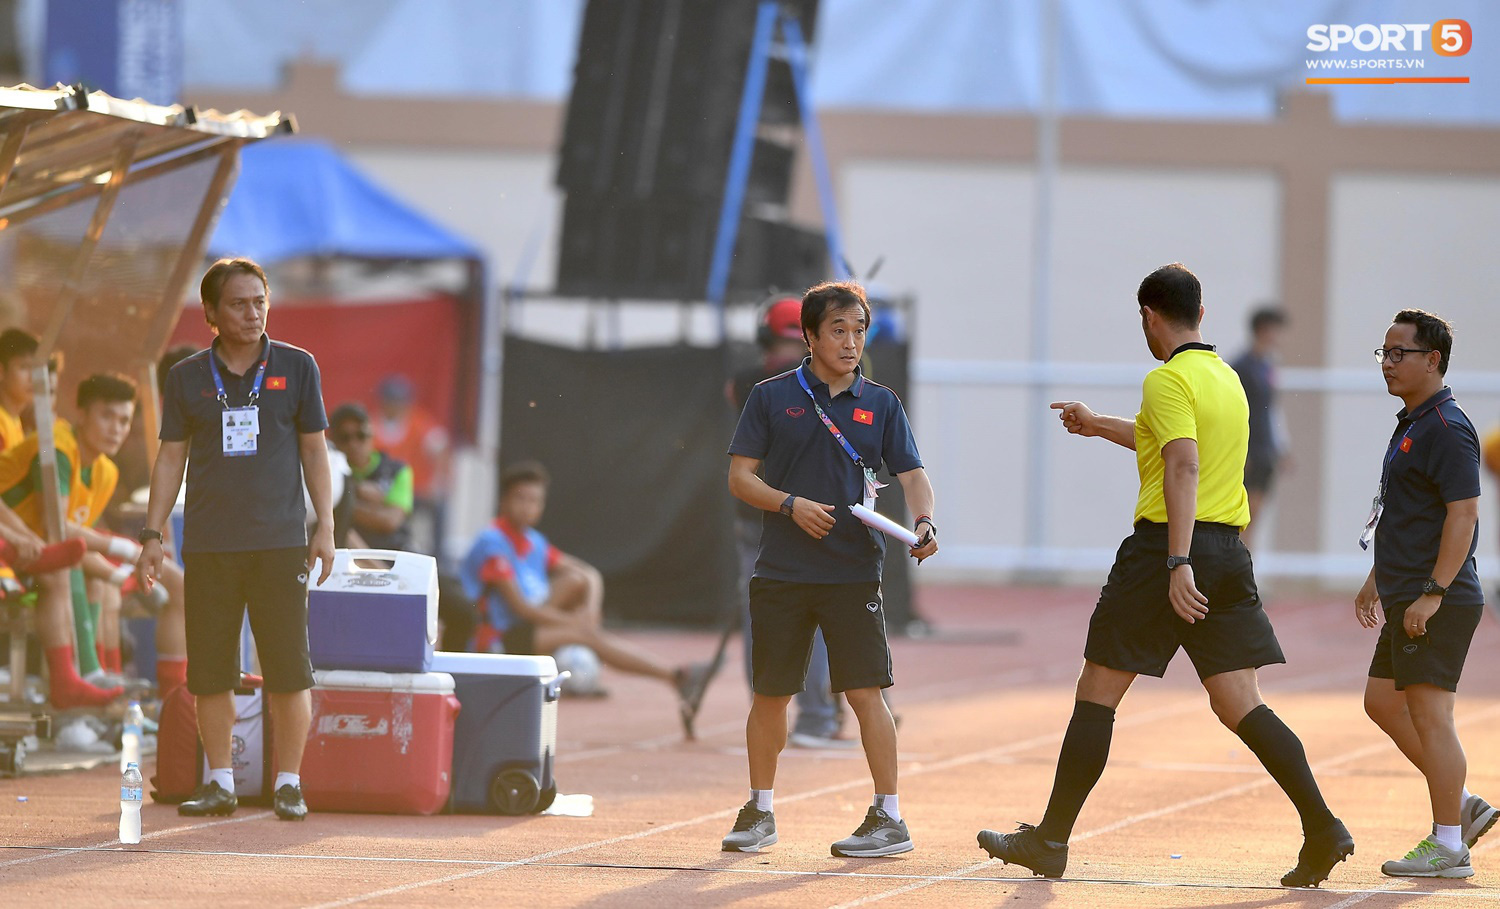 Trợ lý HLV Park Hang-seo bất ngờ phải nhận thẻ vàng trong trận U22 Việt Nam gặp U22 Thái Lan - Ảnh 2.